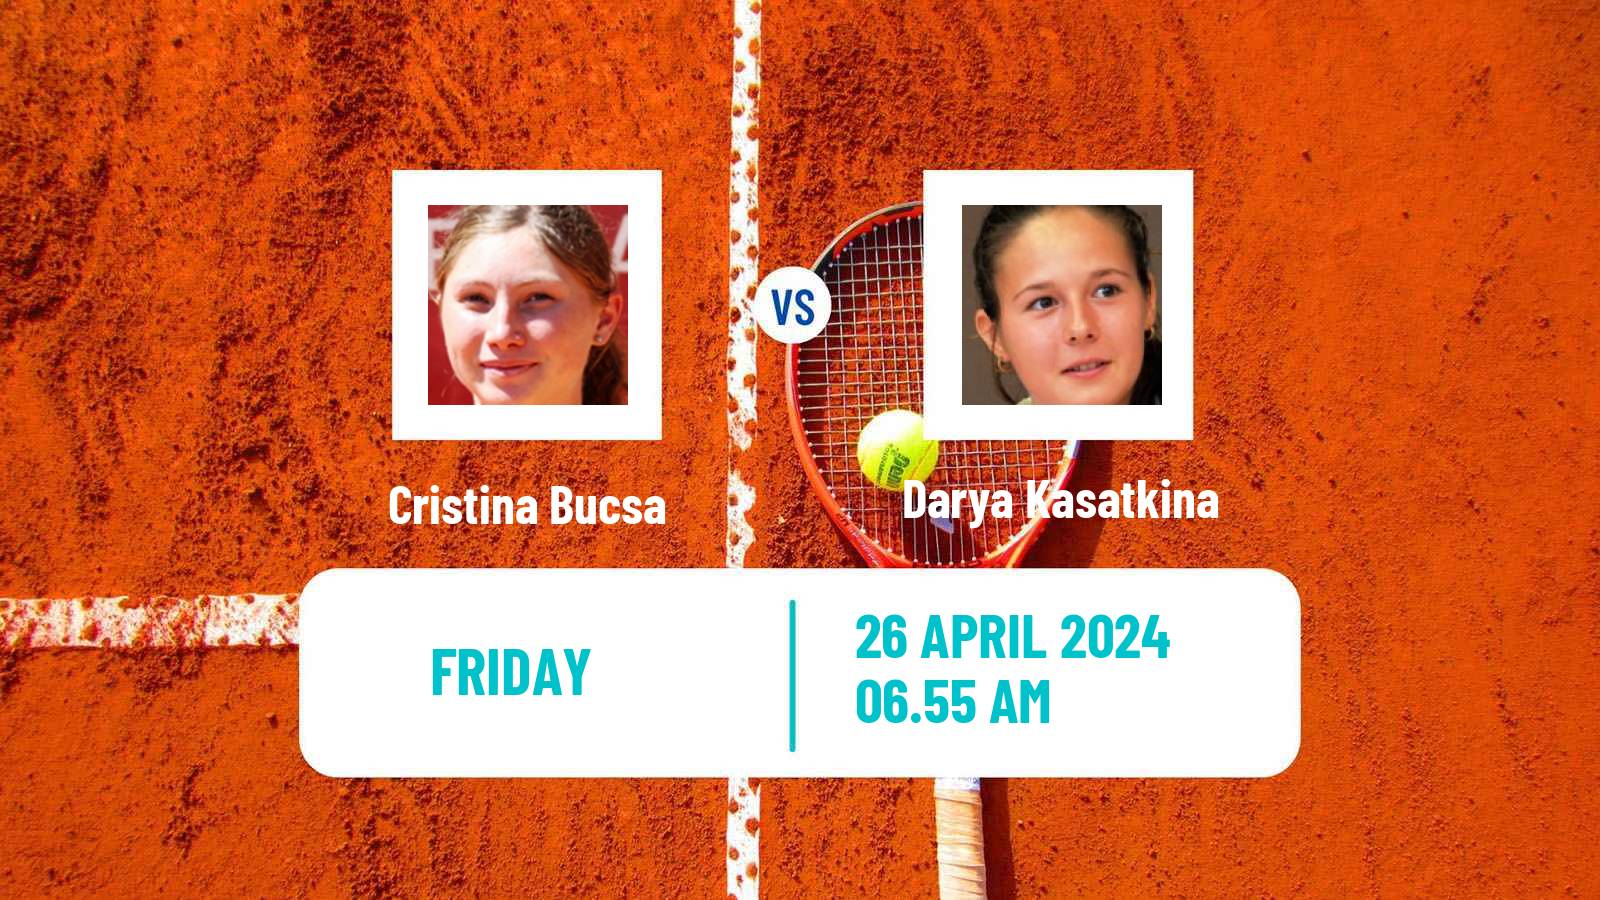 Tennis WTA Madrid Cristina Bucsa - Darya Kasatkina